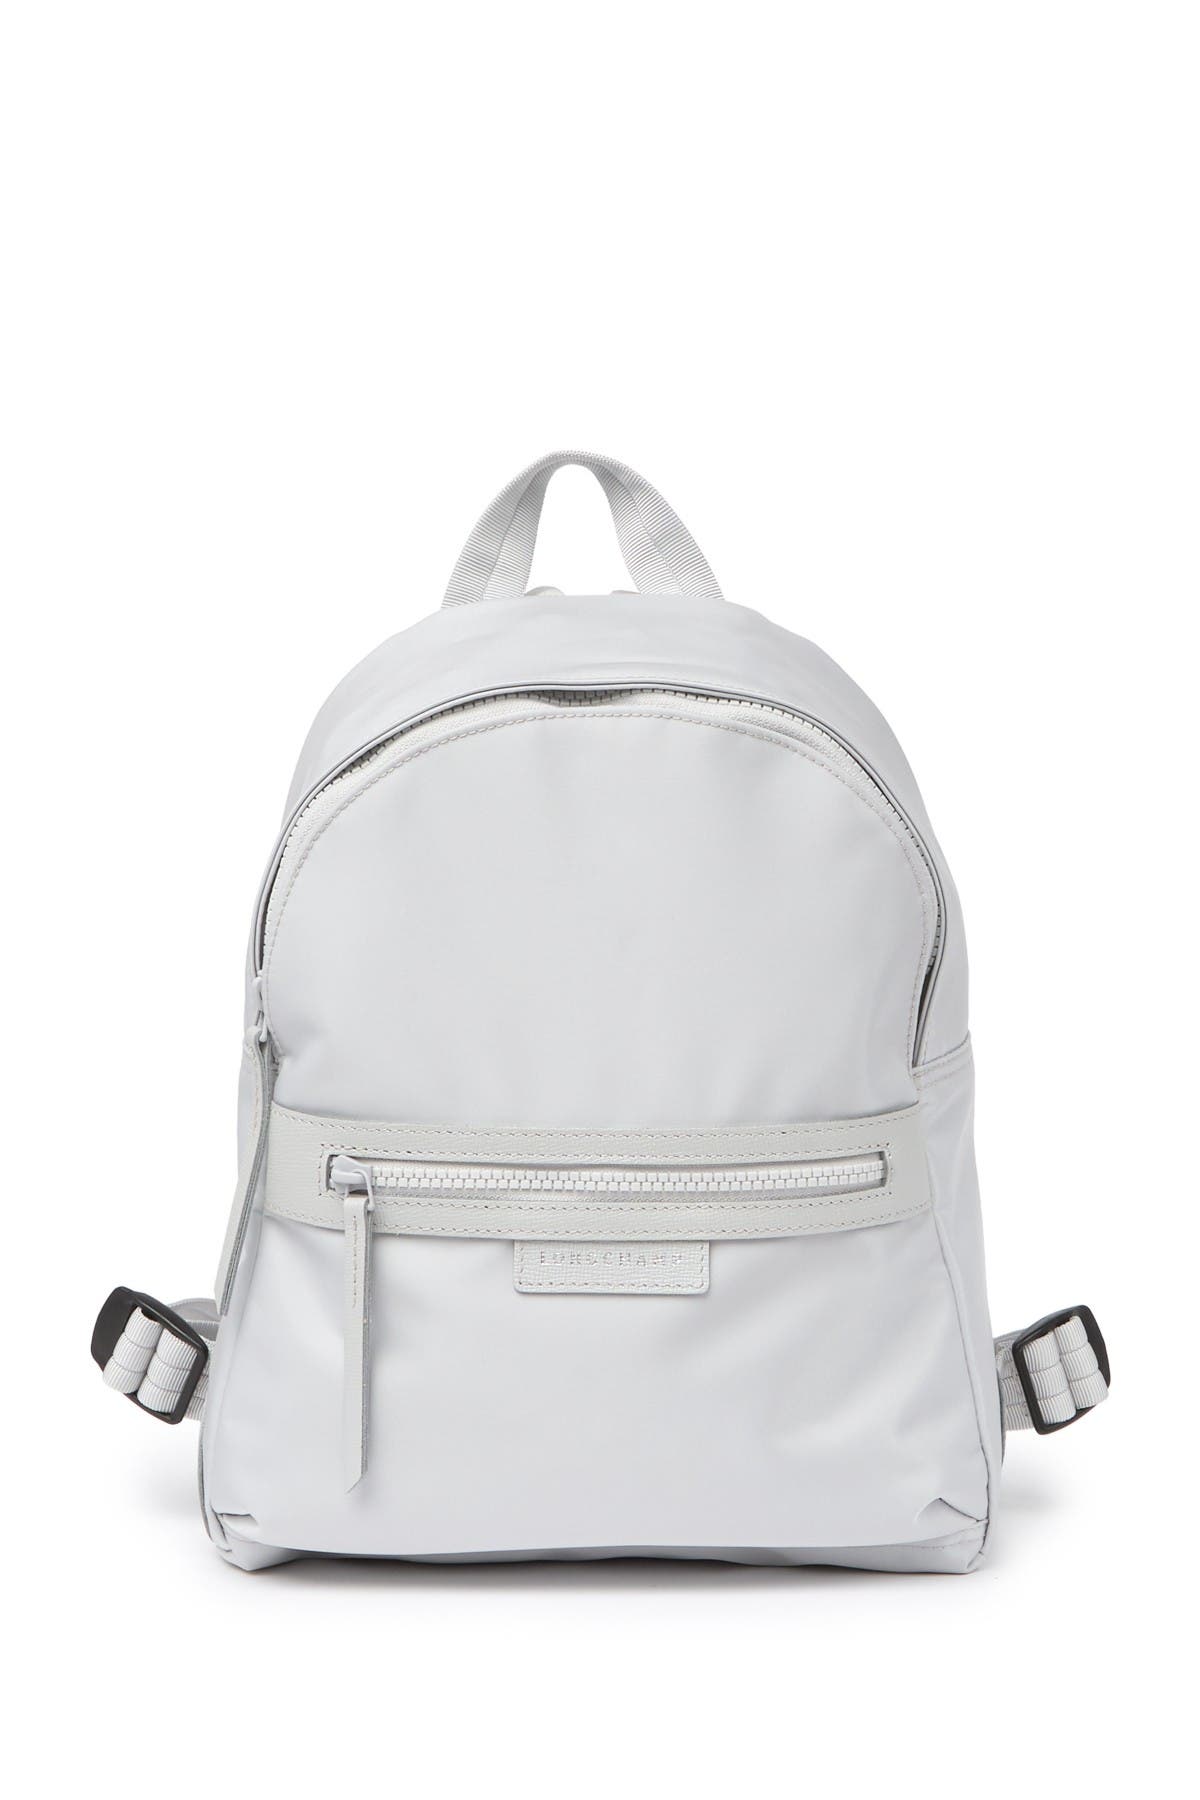 le pliage neo nylon backpack